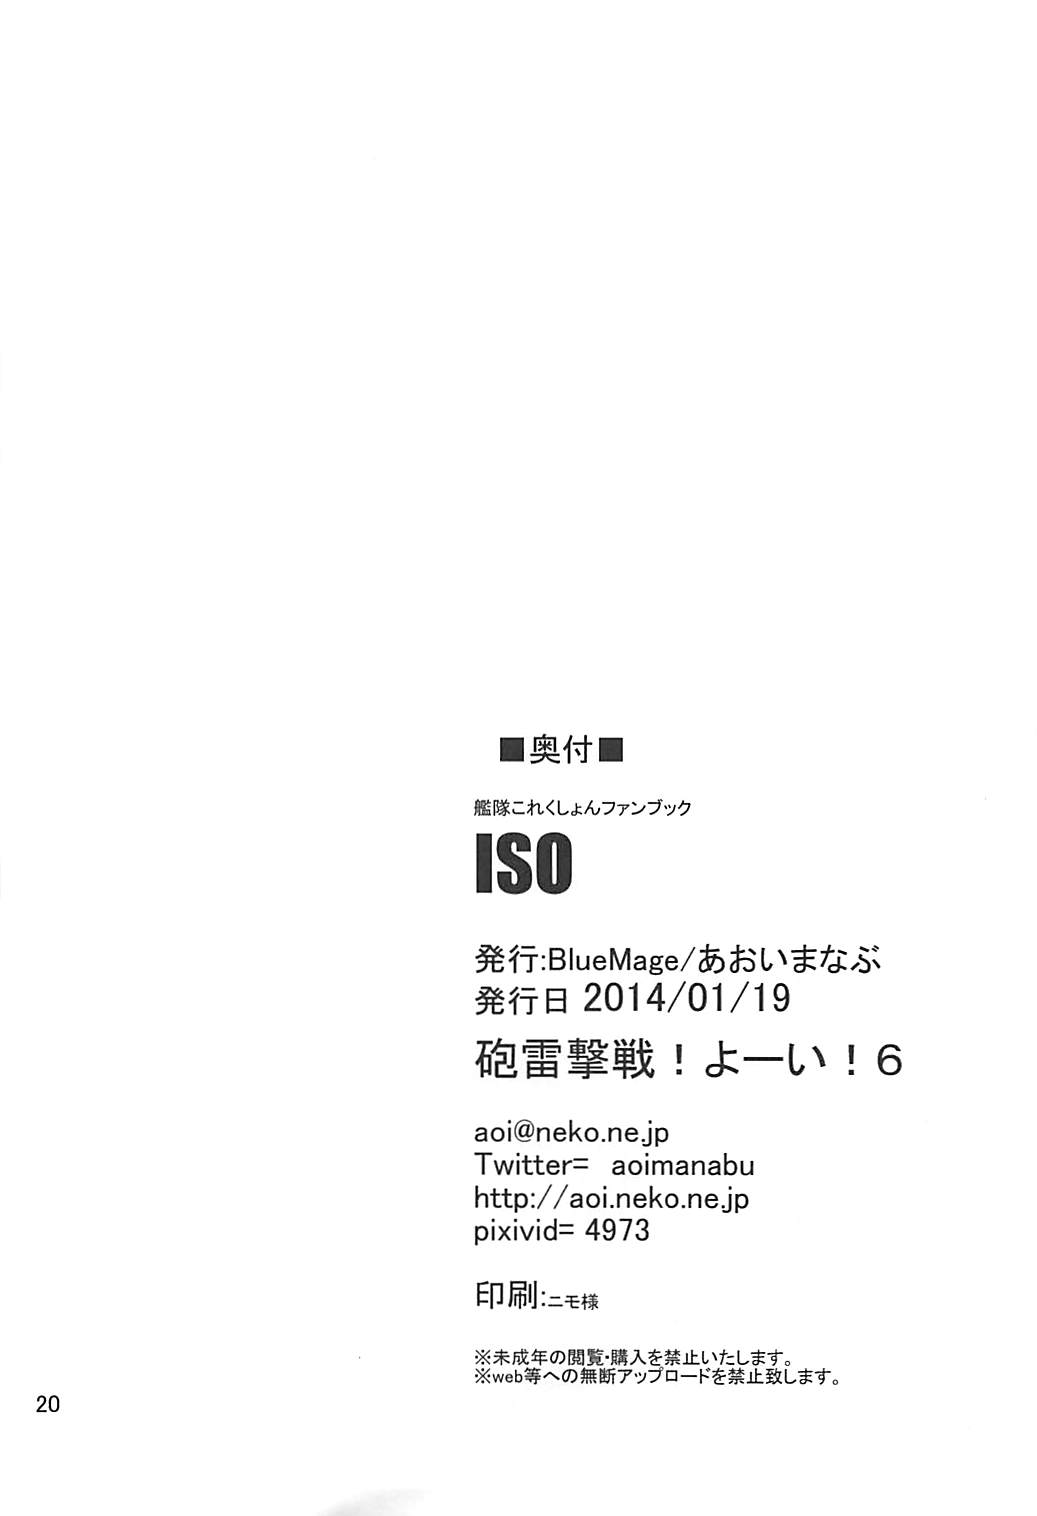 (砲雷撃戦!よーい!六戦目) [BlueMage (あおいまなぶ)] ISO (艦隊これくしょん -艦これ-)